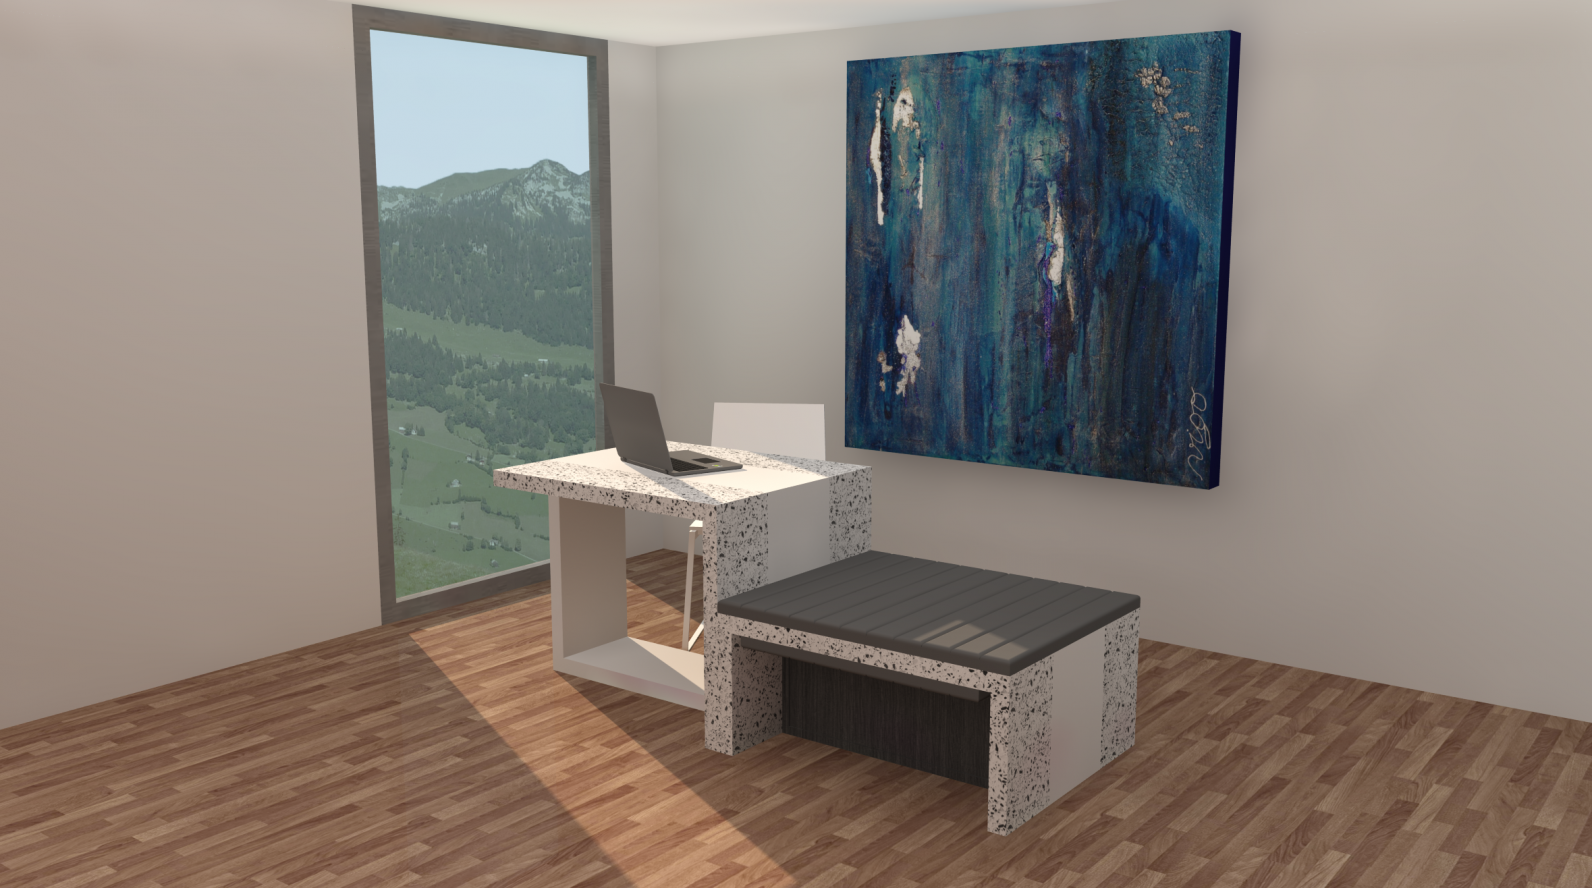 PROJET 2 : Le meuble Hybrid, à trois modules, permet de nombreuses configurations pouvant s’adapter aux besoins des générations futures. Il combine la fonctionnalité d’un lieu commercial et le confort d’un foyer.